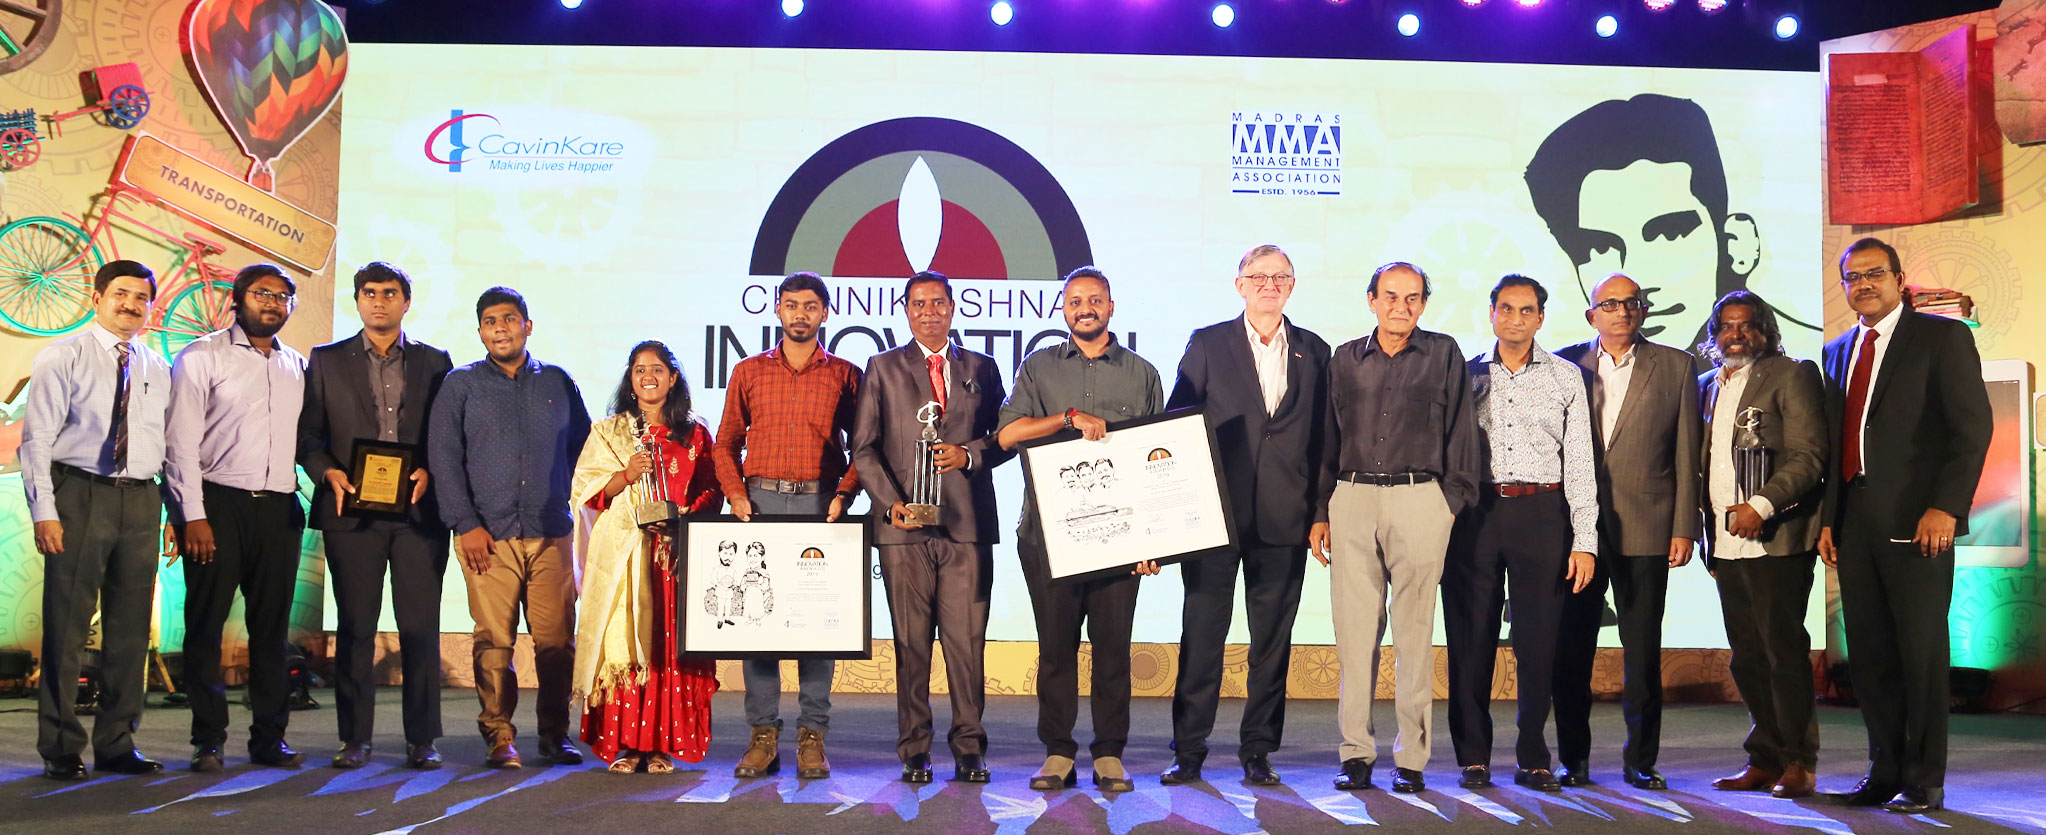 ChinniKrishnan Innovation Awards